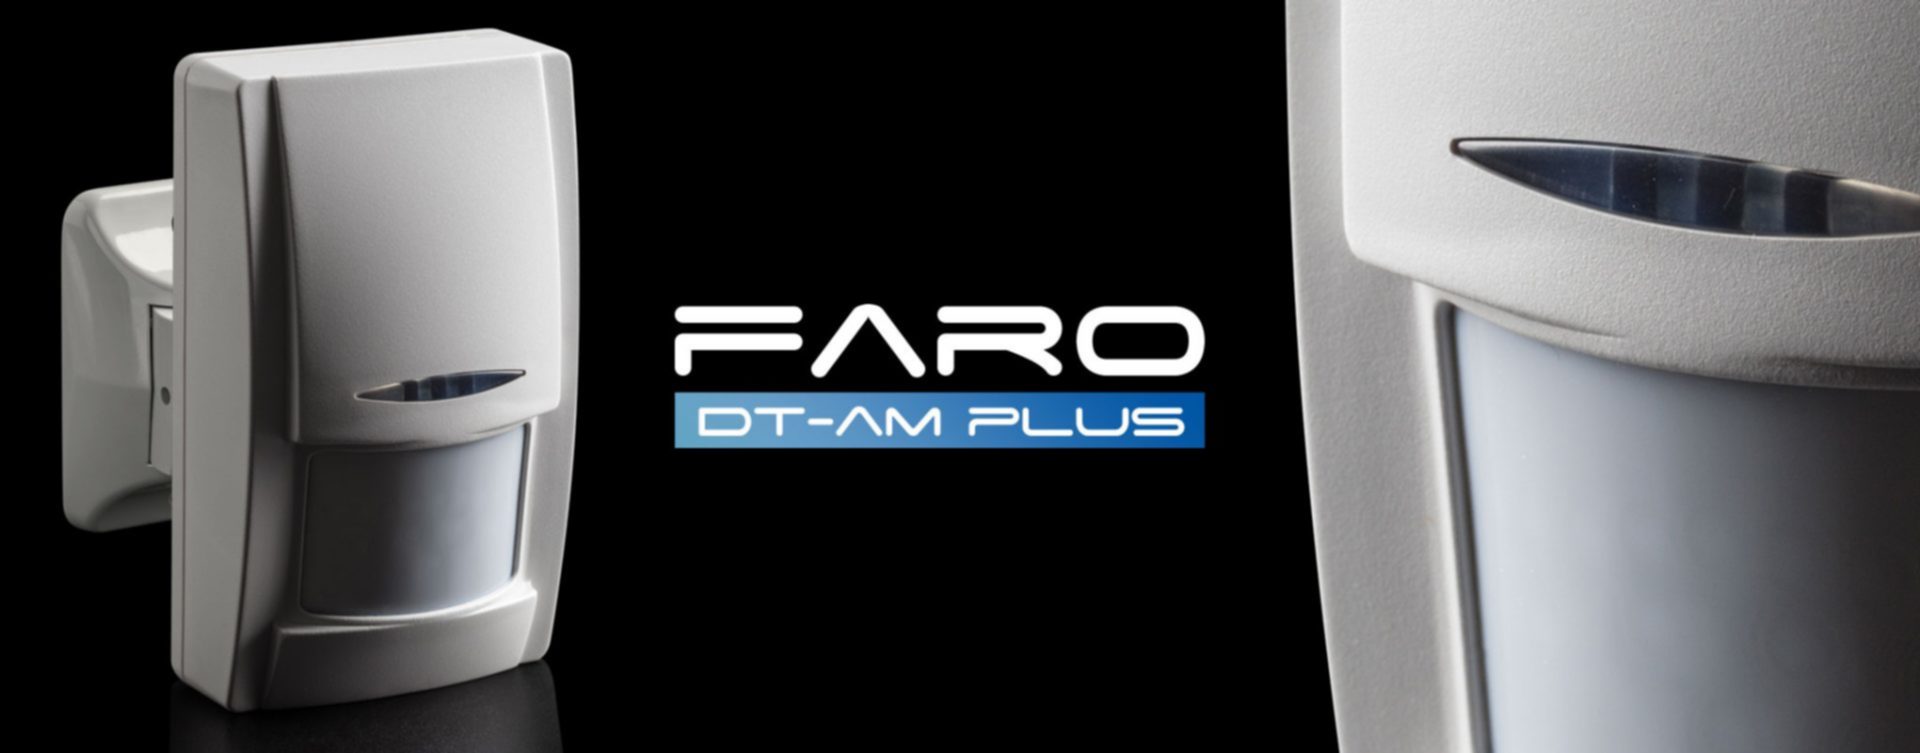 Faro DT-AM Plus